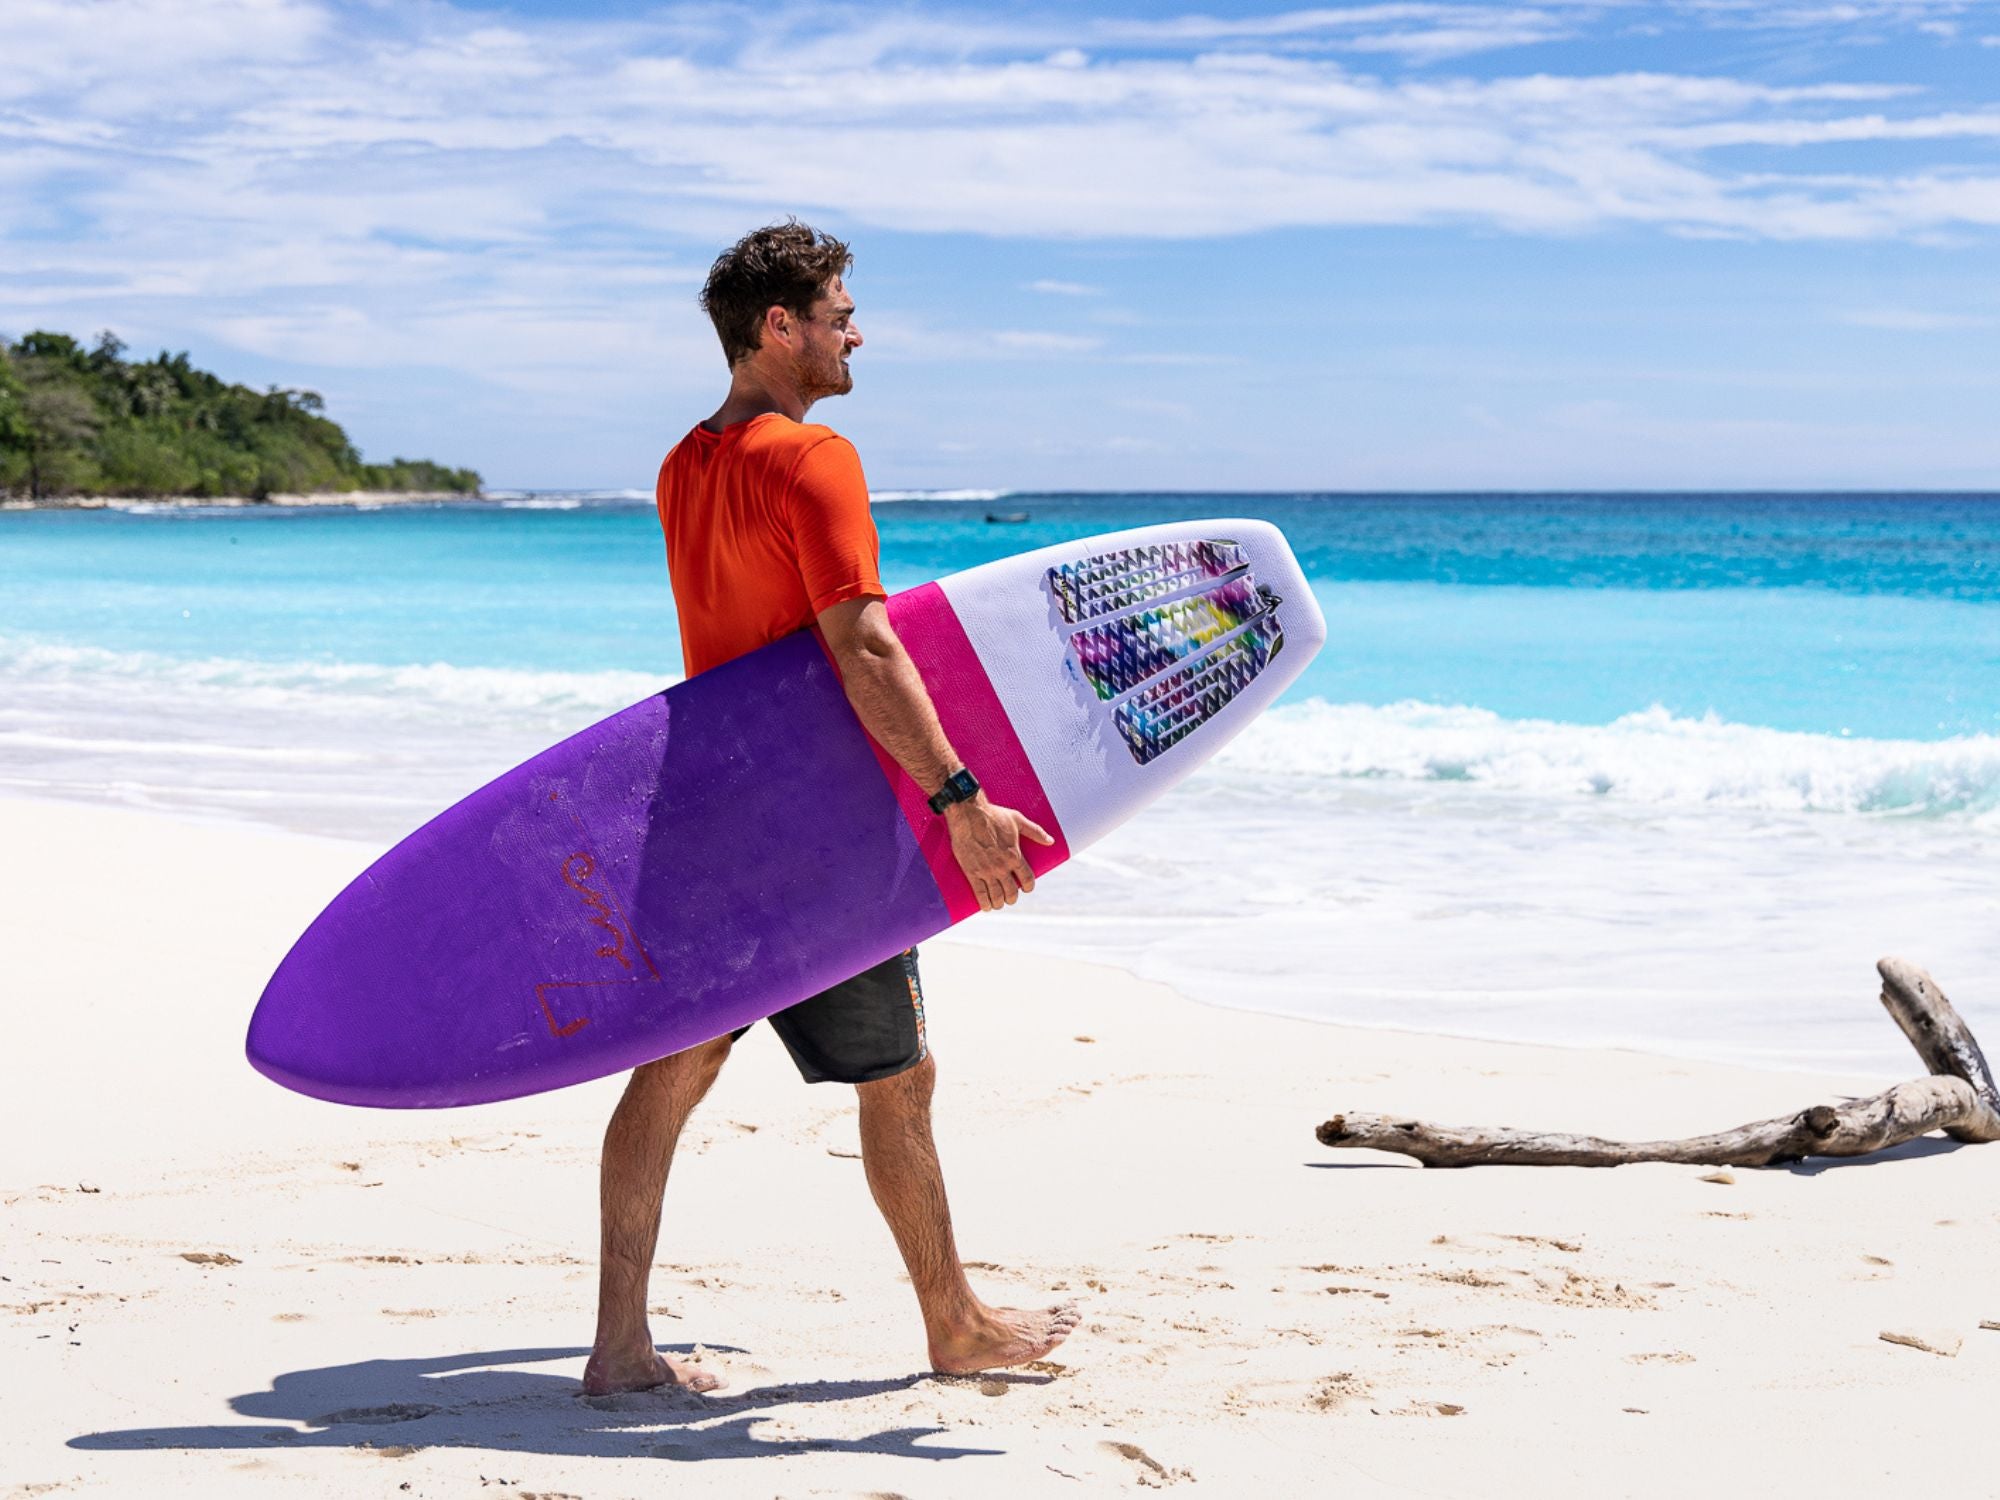 un sufeur sur une plage avec une planche de surf en mousse qui a de la wax sur le pont 